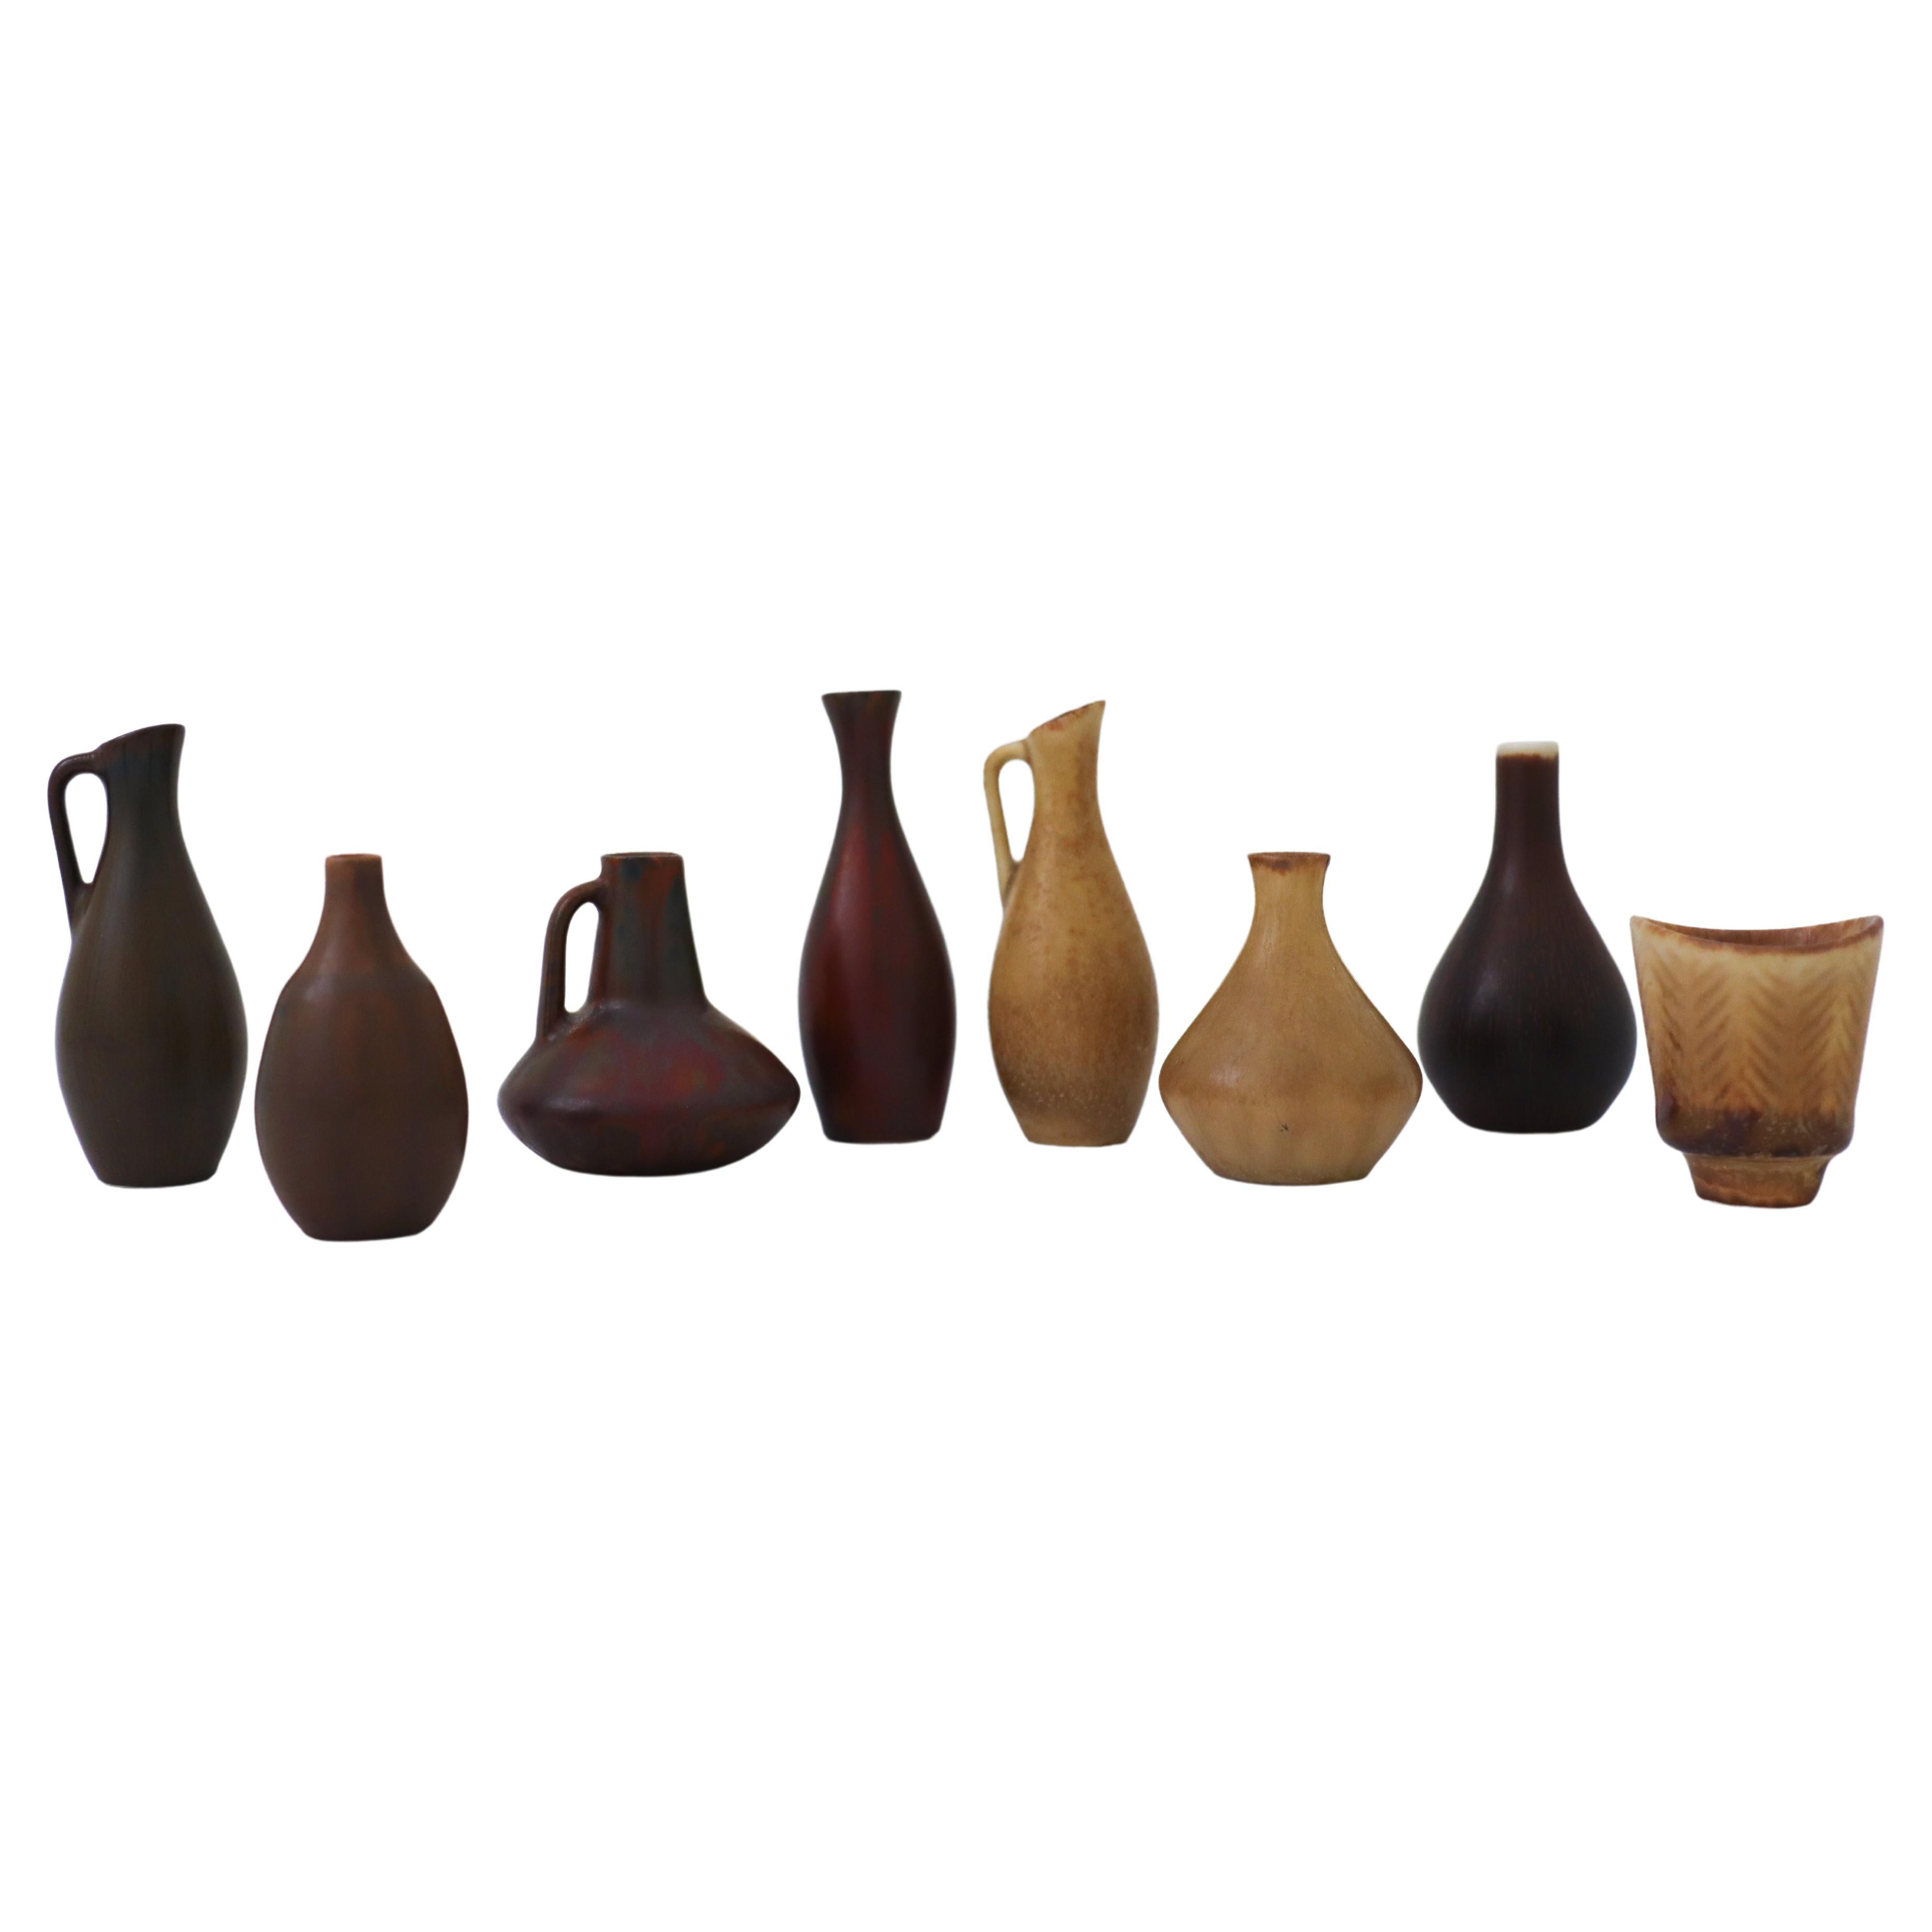 Group of 8 Miniature Vases, Rörstrand, Carl-Harry Stålhane Mid-Century Vintage